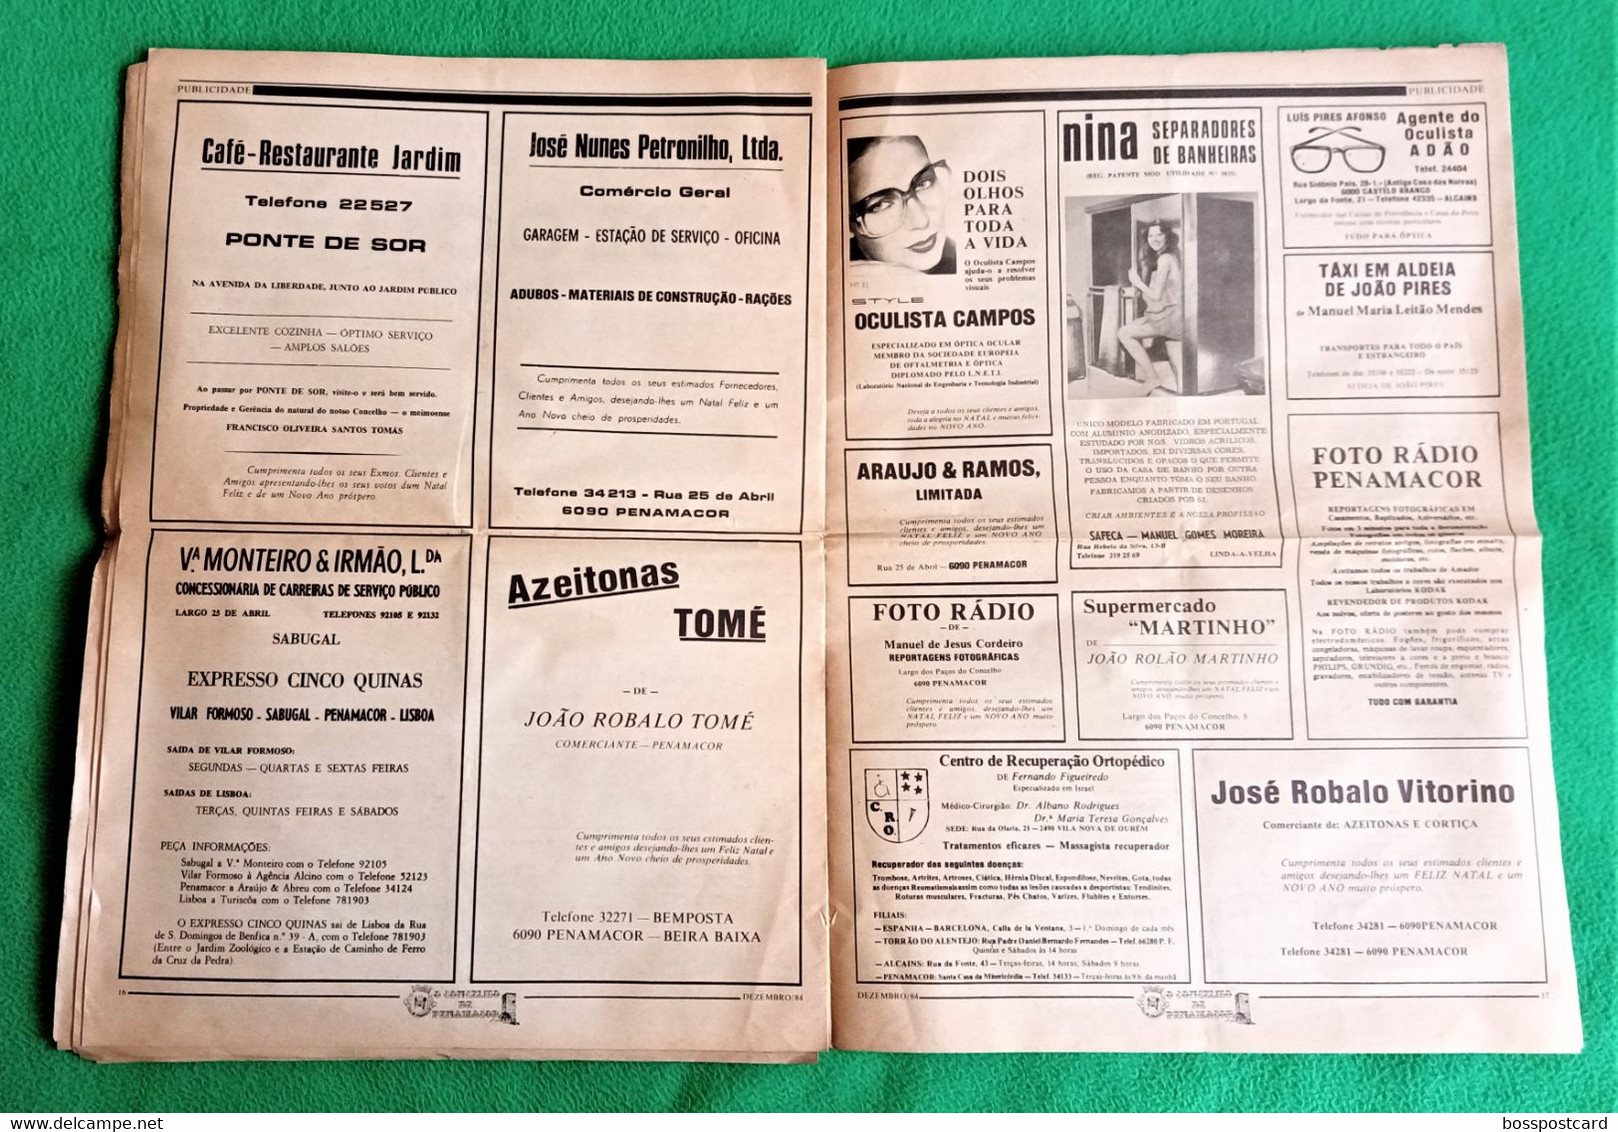 Penamacor - Jornal O Concelho de Penamacor Nº 45, 31 de Dezembro de 1984 - Imprensa. Castelo Branco. Portugal.